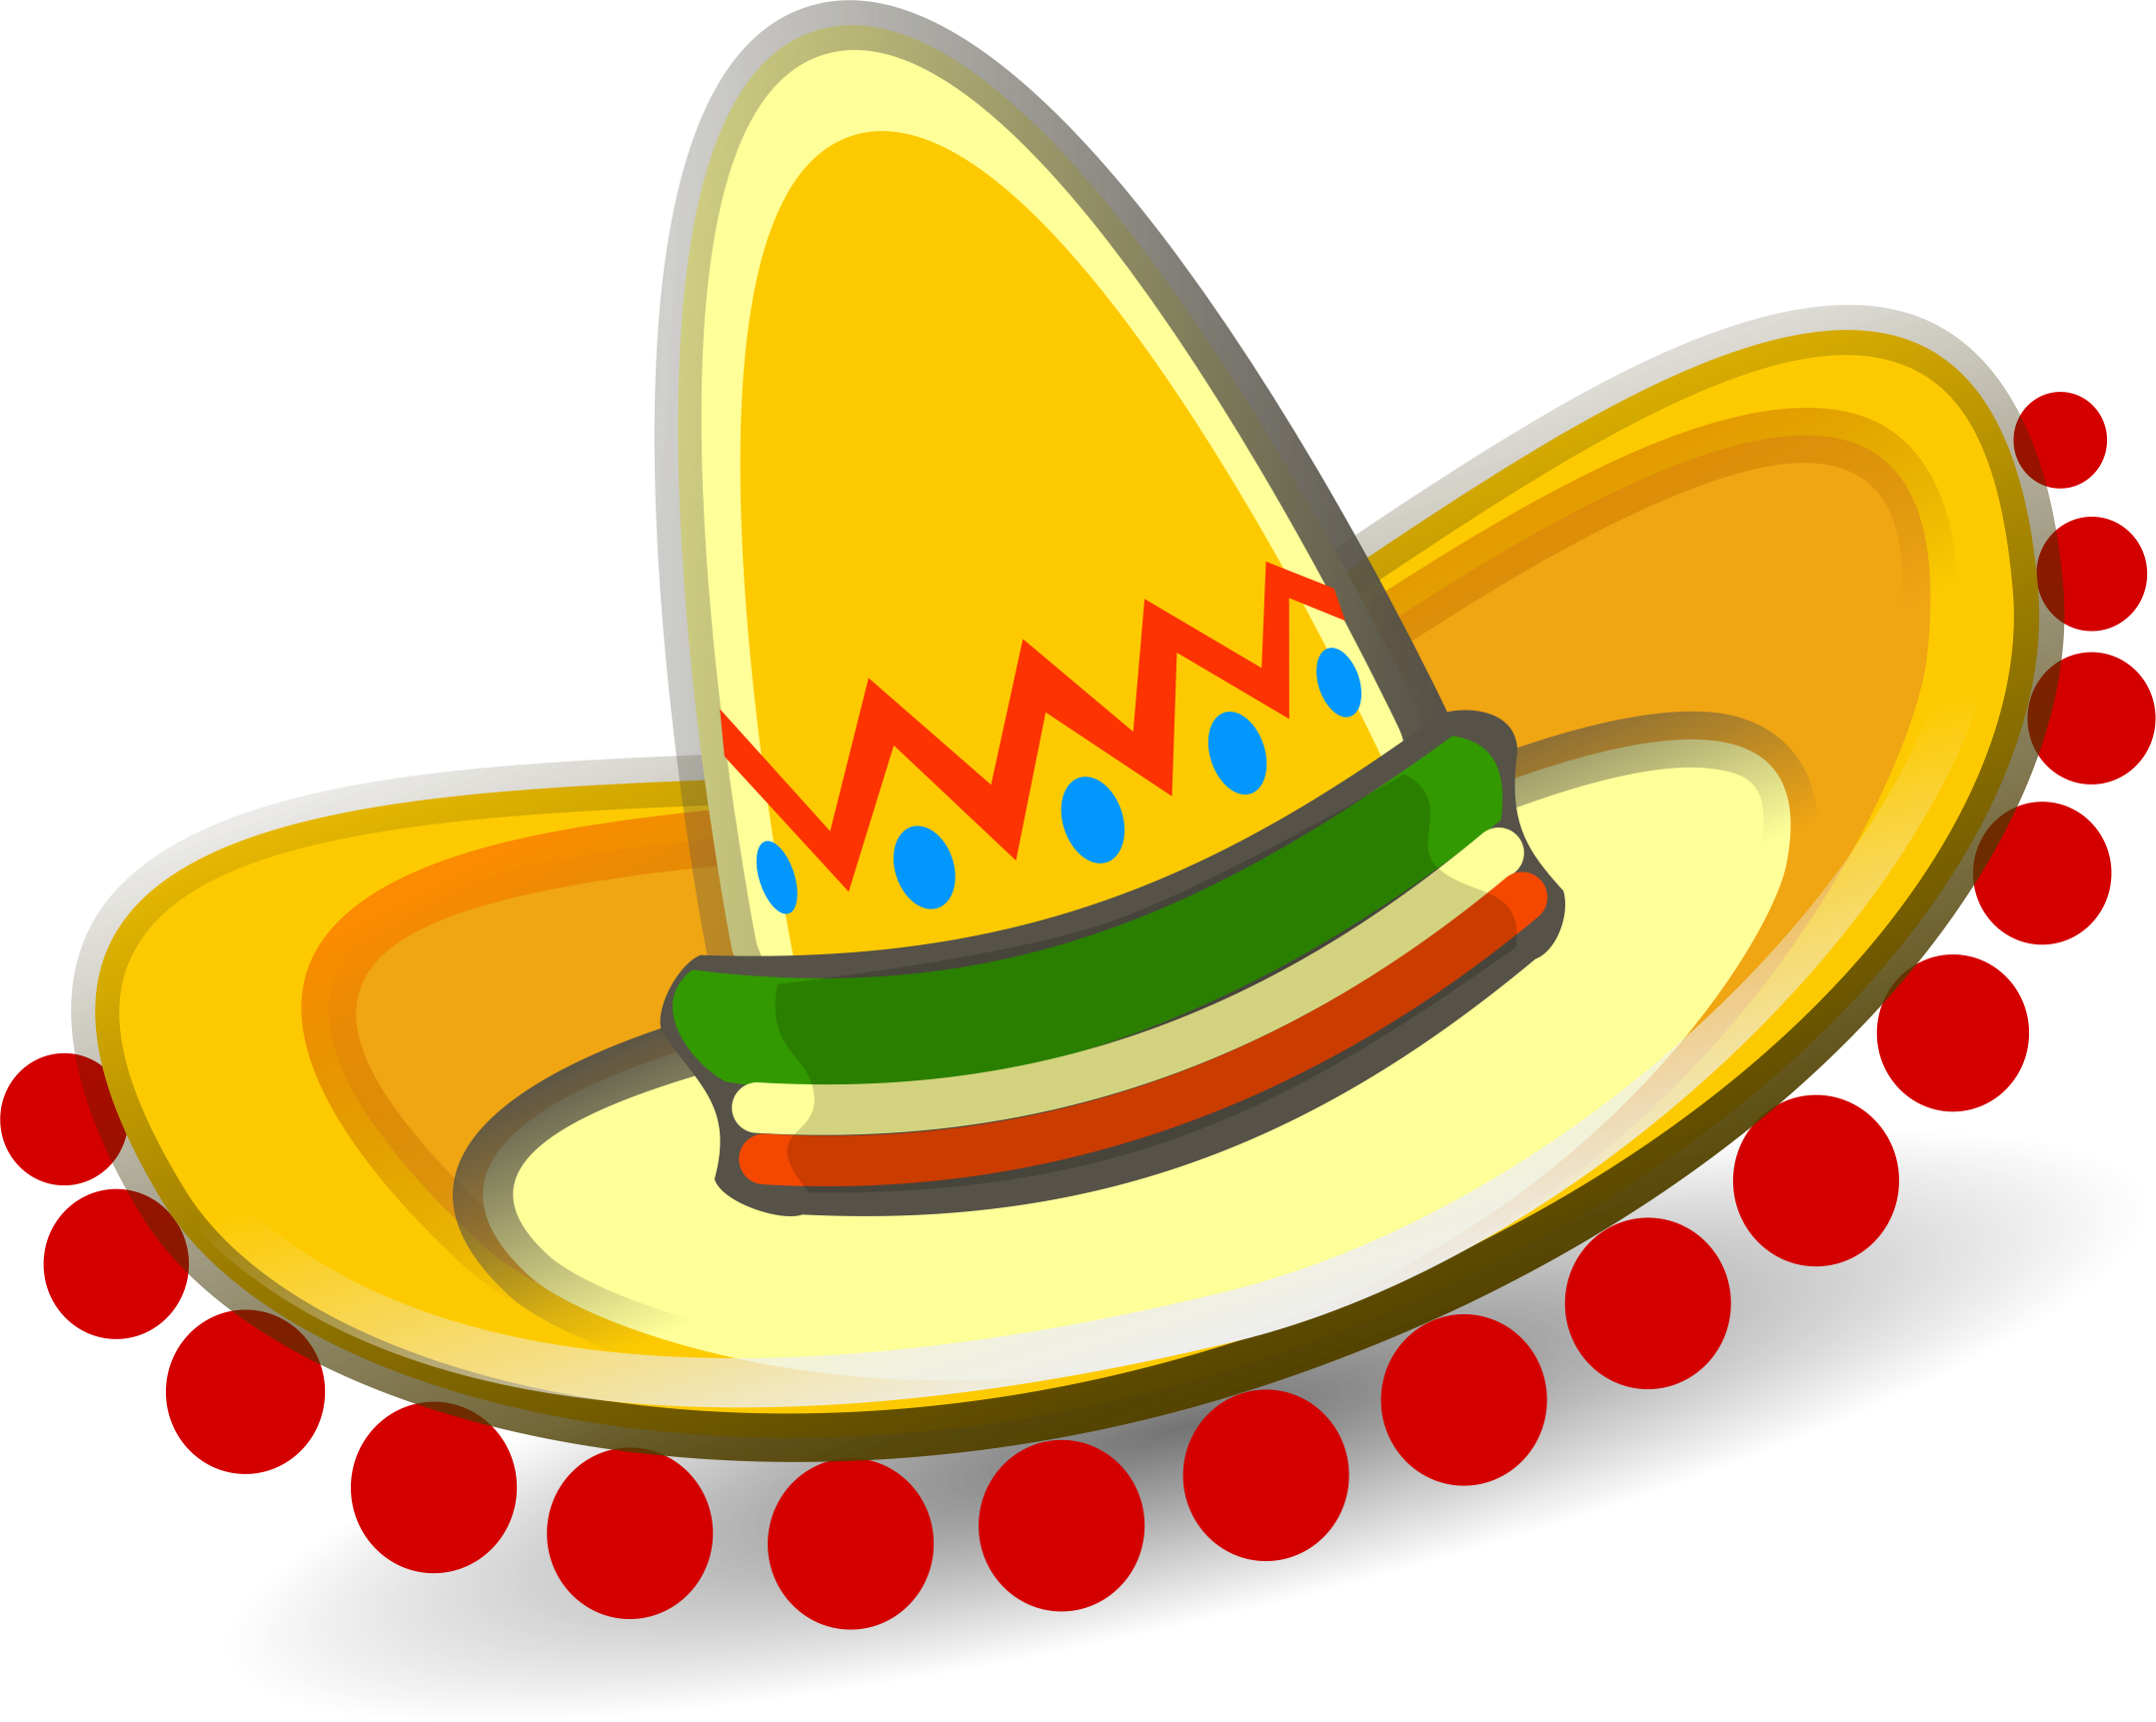 sombrero: Mexican sombrero